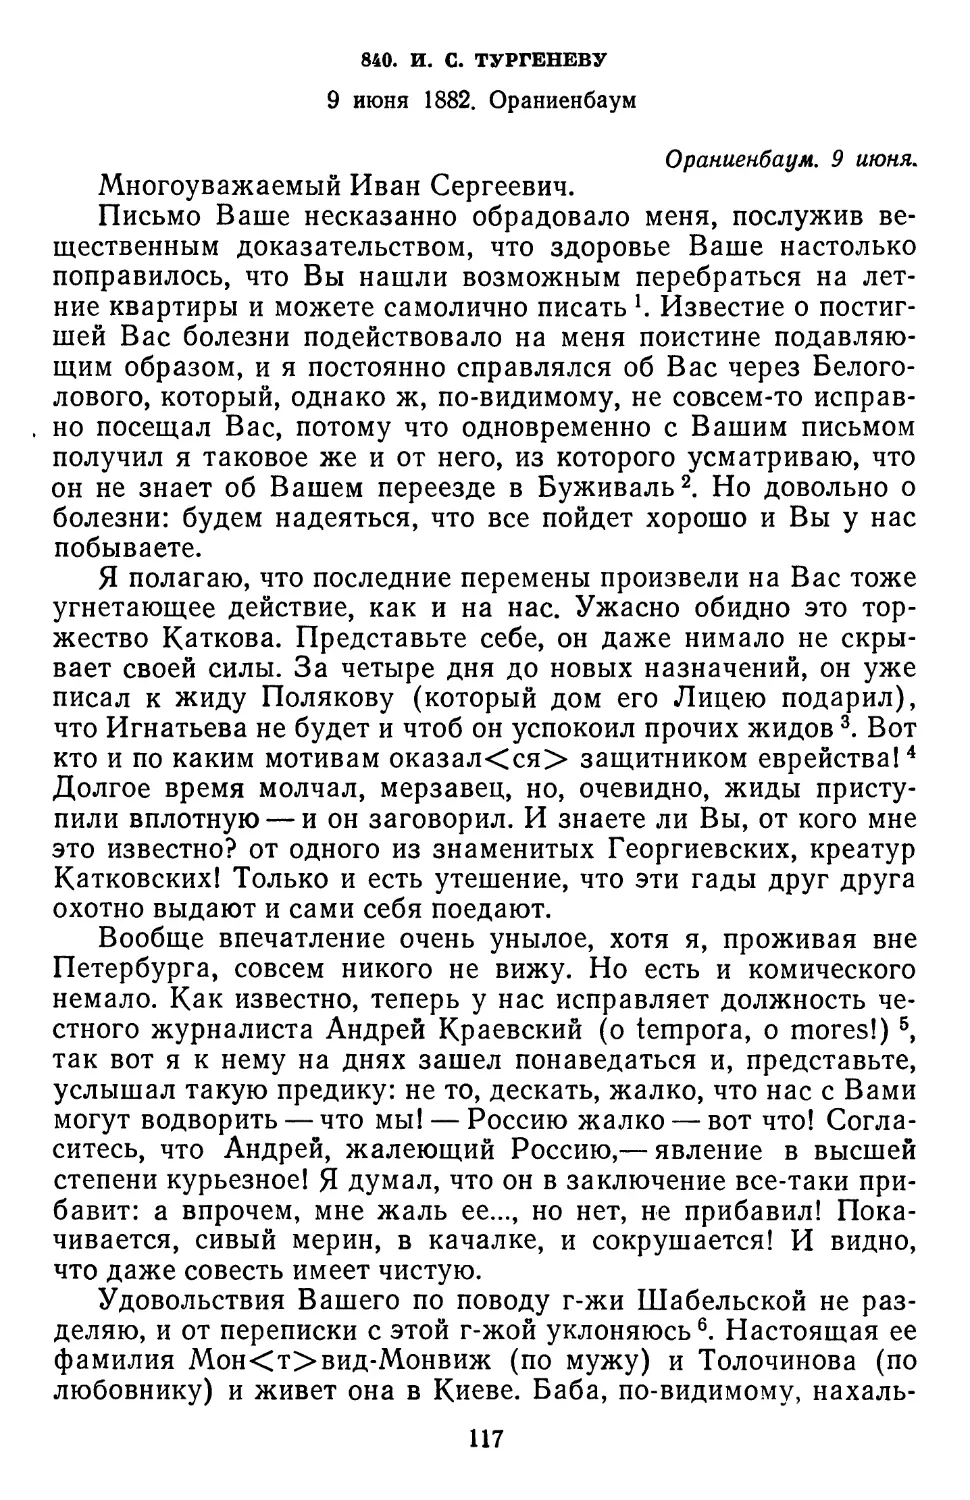 840.И. С. Тургеневу. 9 июня 1882. Ораниенбаум